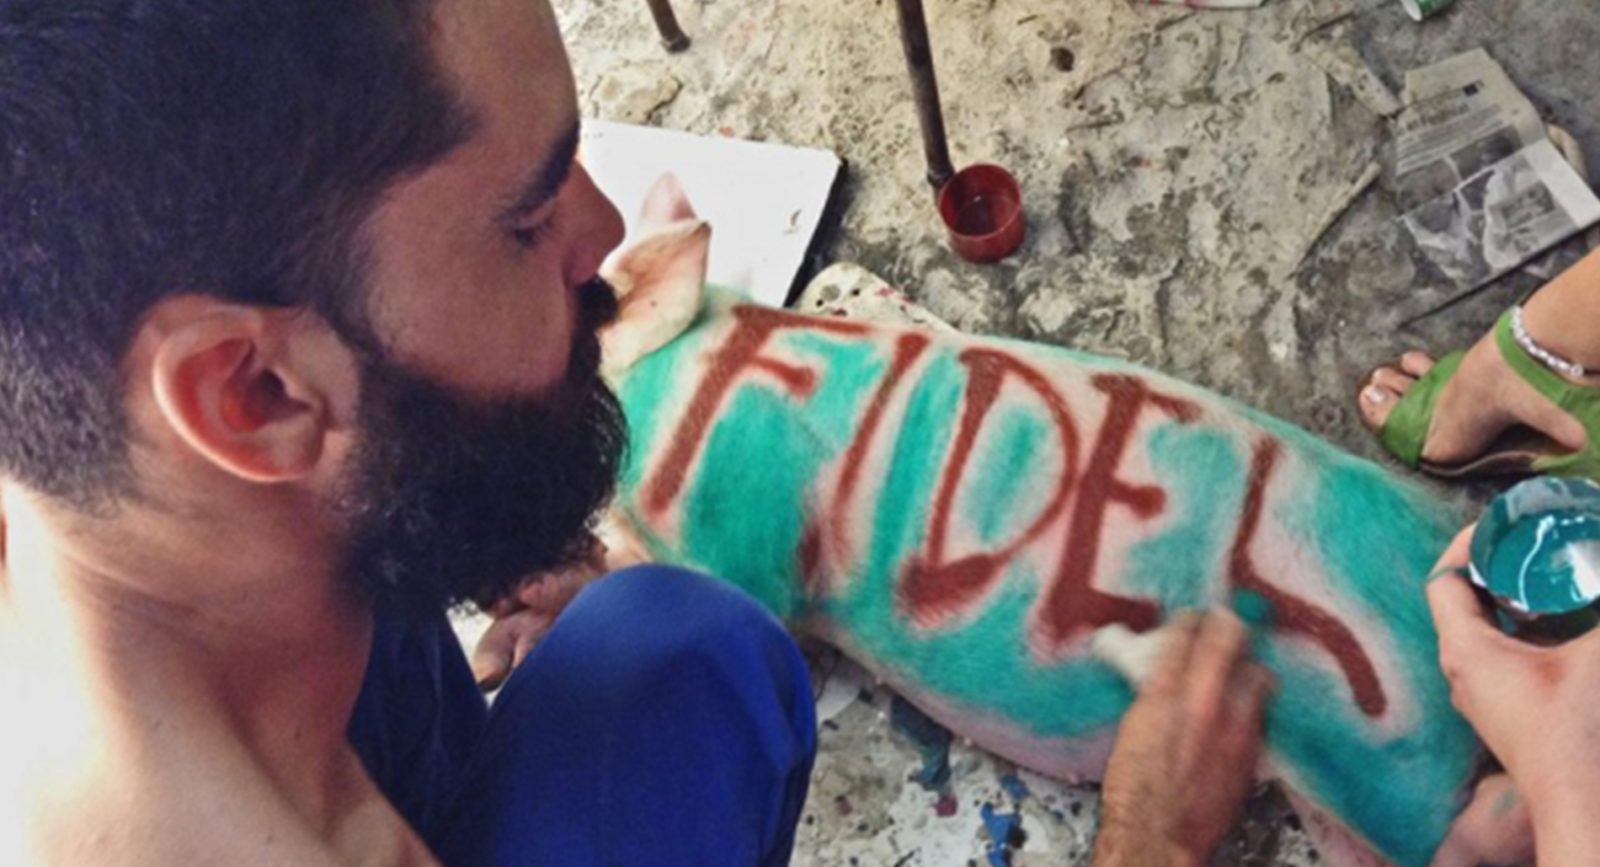 Danilo Maldonado, Cuban graffiti artist and prisoner of conscience